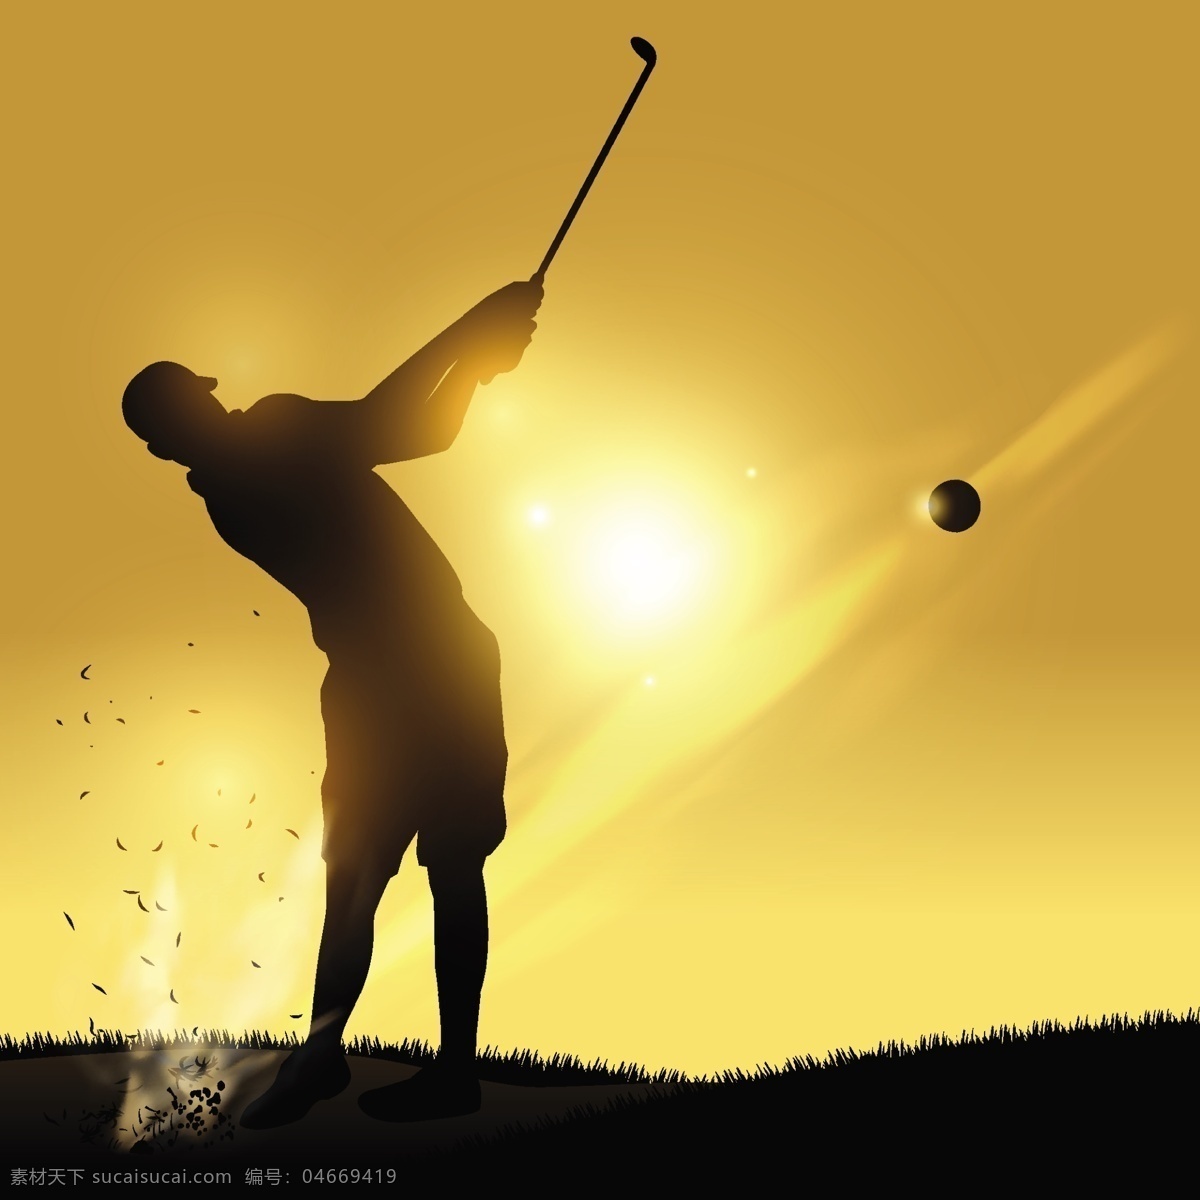 高尔夫 高尔夫比赛 高尔夫运动 高尔夫海报 高尔夫球场 打高尔夫 高尔夫背景 高尔夫画册 高尔夫文化 室内高尔夫 高尔夫酒店 高尔夫展板 高尔夫培训 高尔夫招生 高尔夫艺术 高尔夫球 高尔夫球杆 高尔夫运动会 高尔夫训练 高尔夫人物 高尔夫大赛 高尔夫广告 运动 健身运动 高尔夫俱乐部